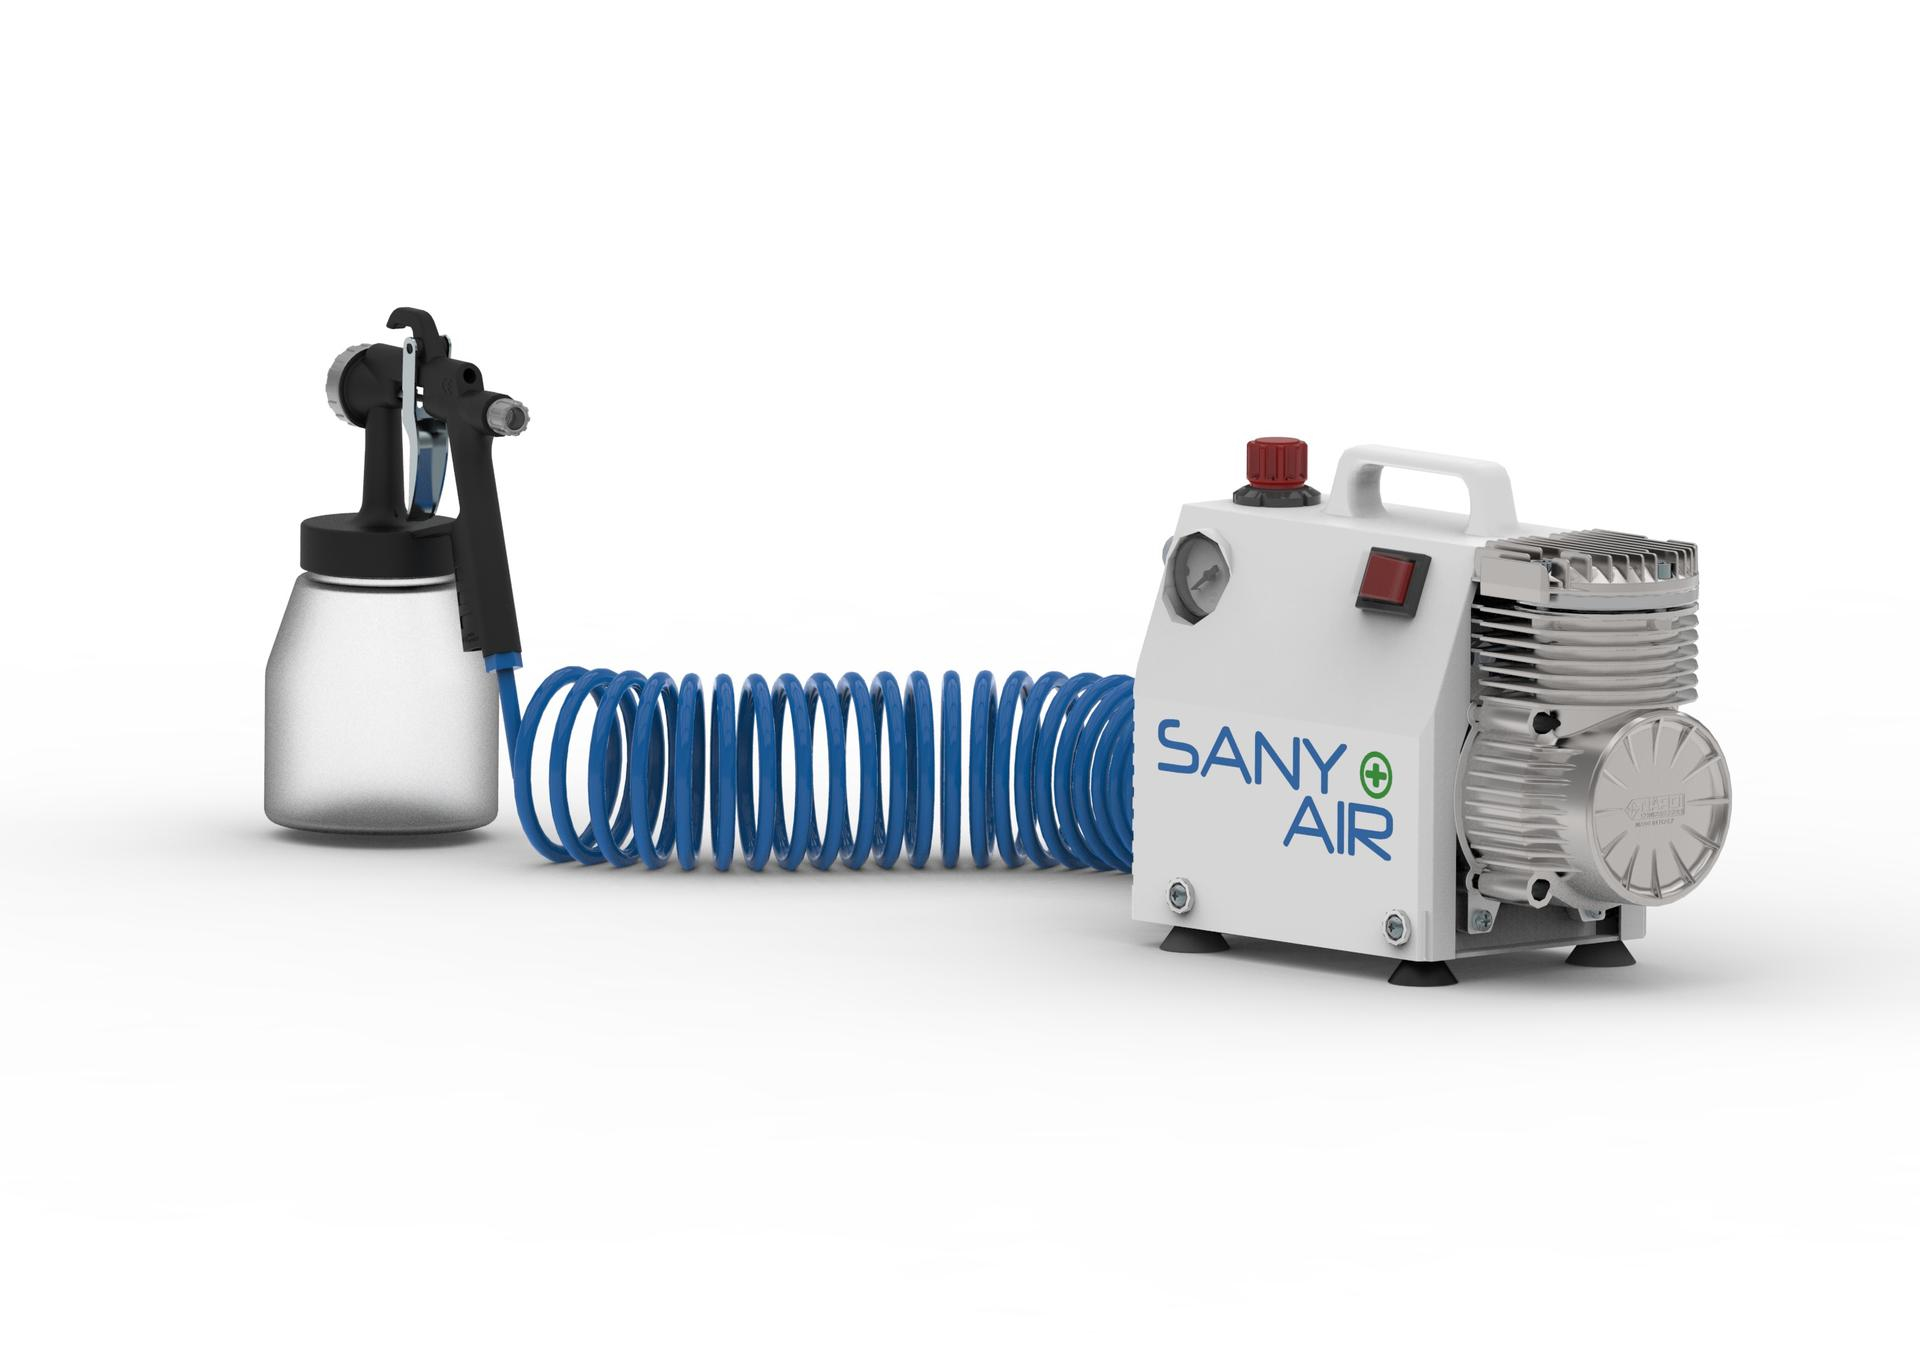 La TopGear.it di Roma presenta Sany+Air, il pratico sanificatore per ambienti e superfici